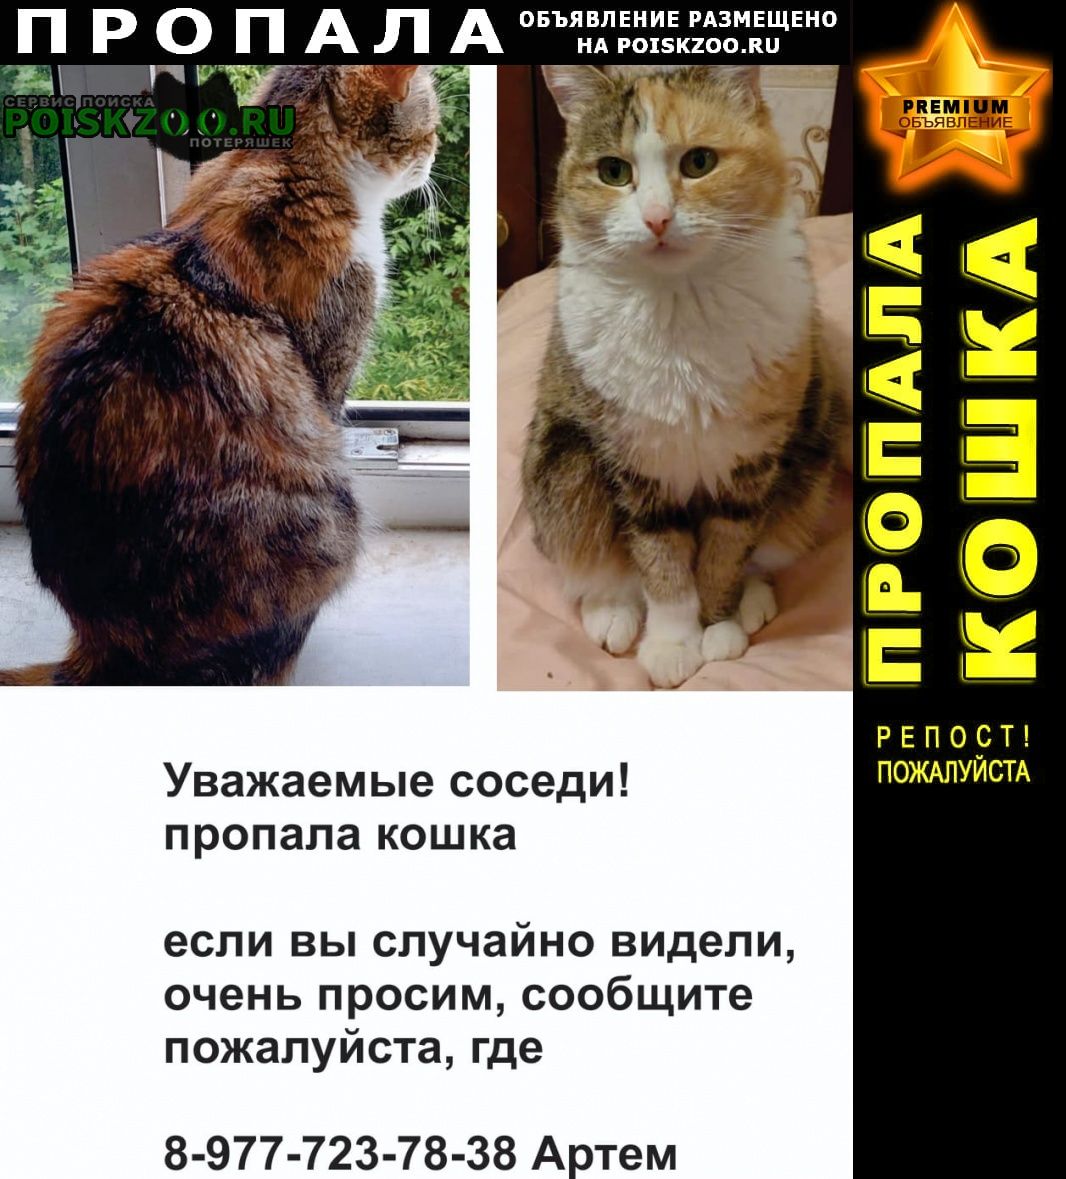 Пропала кошка лаки Красногорск